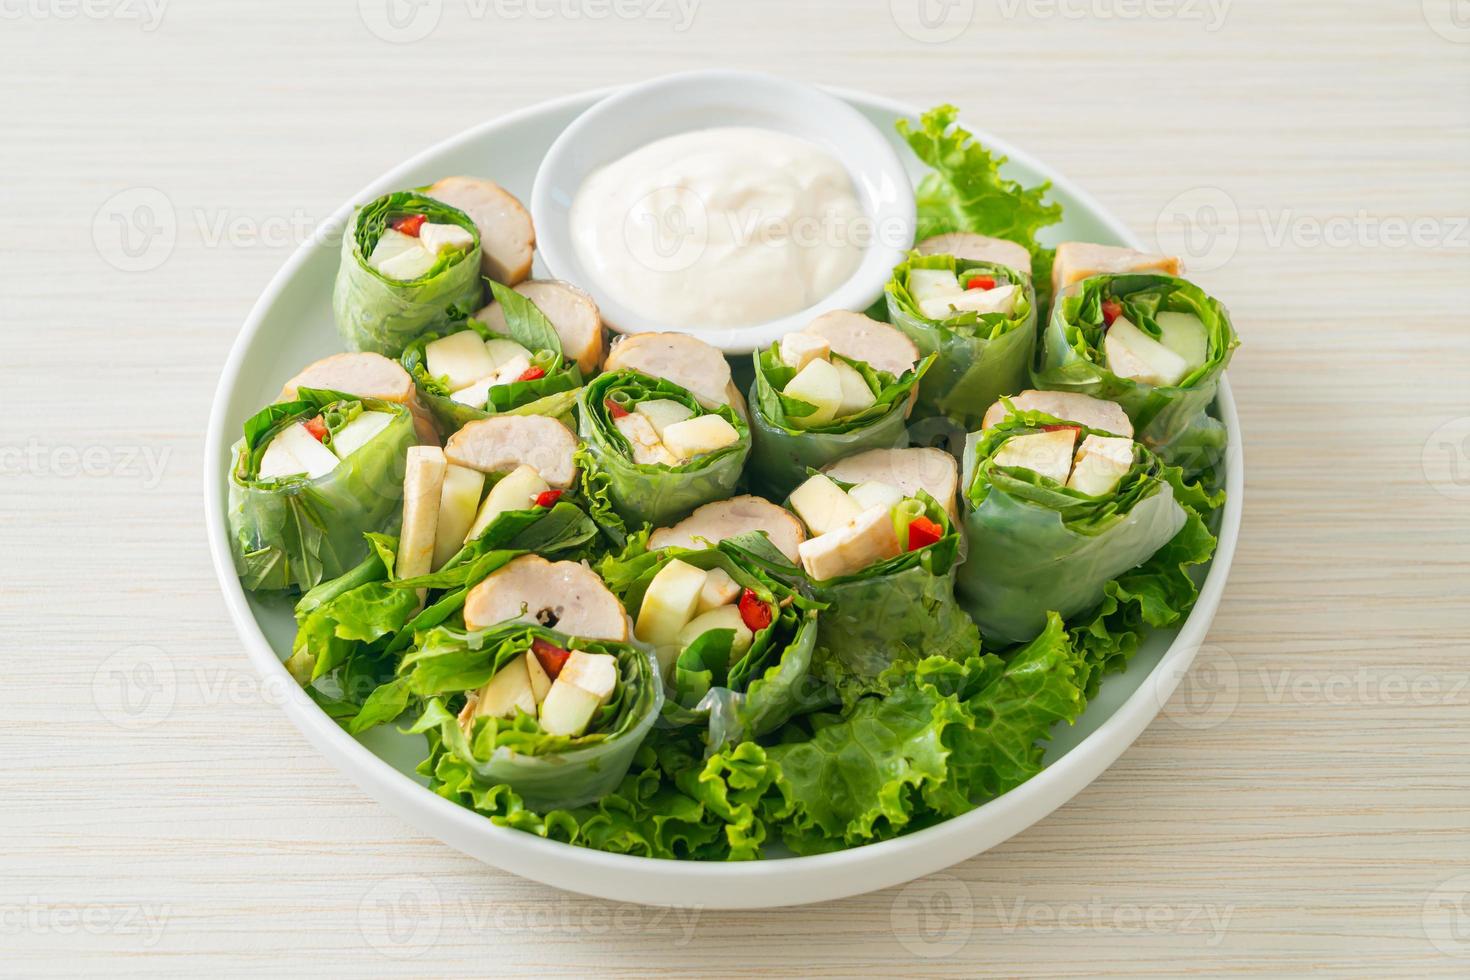 wrap aux légumes ou rouleaux de salade avec sauce crémeuse à la salade photo